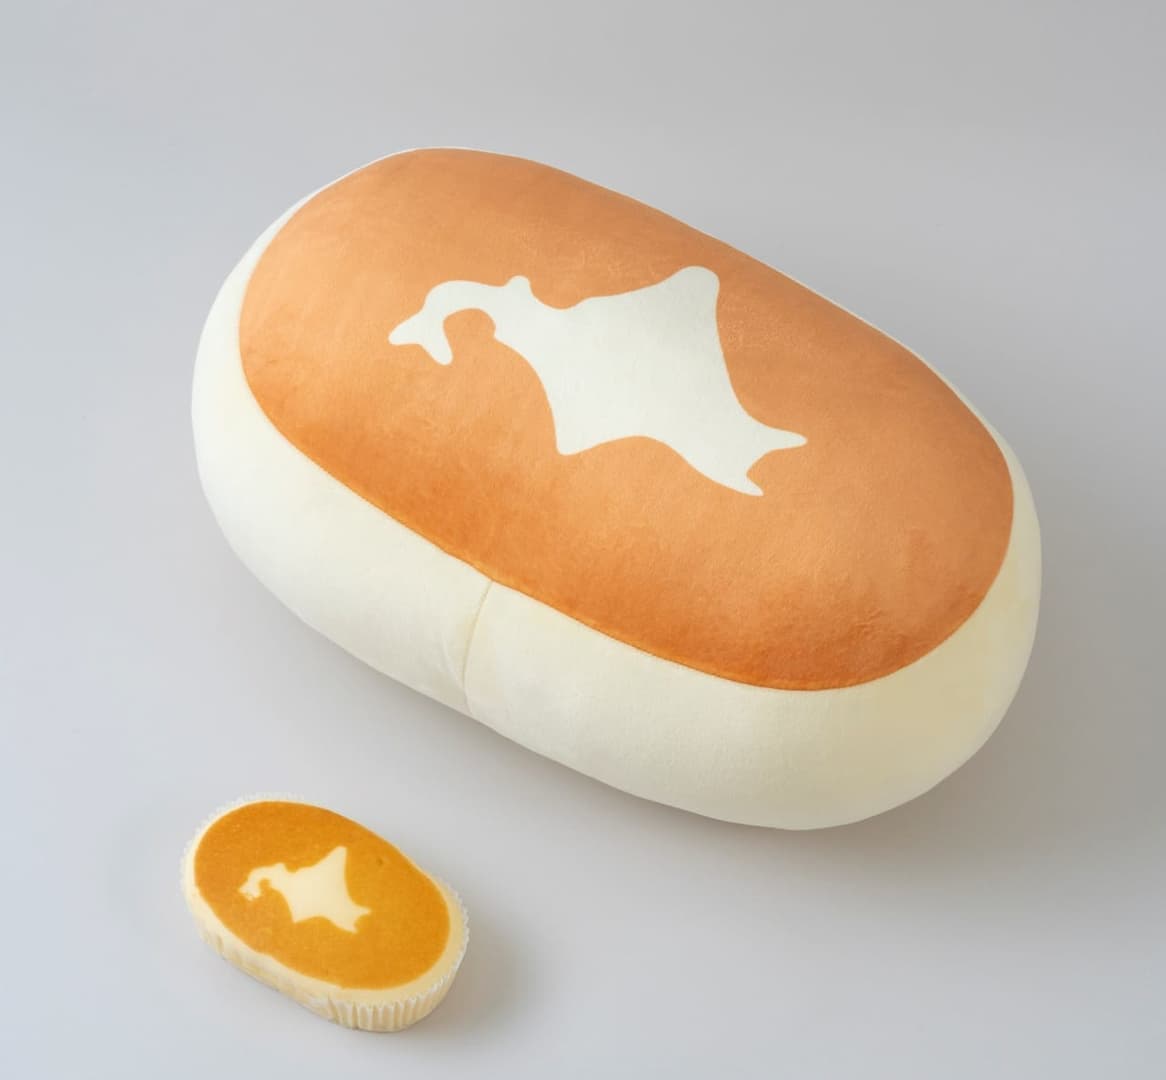 「北海道チーズ蒸しケーキ」のビッグなぬいぐるみが付属するムック本が発売へ_003